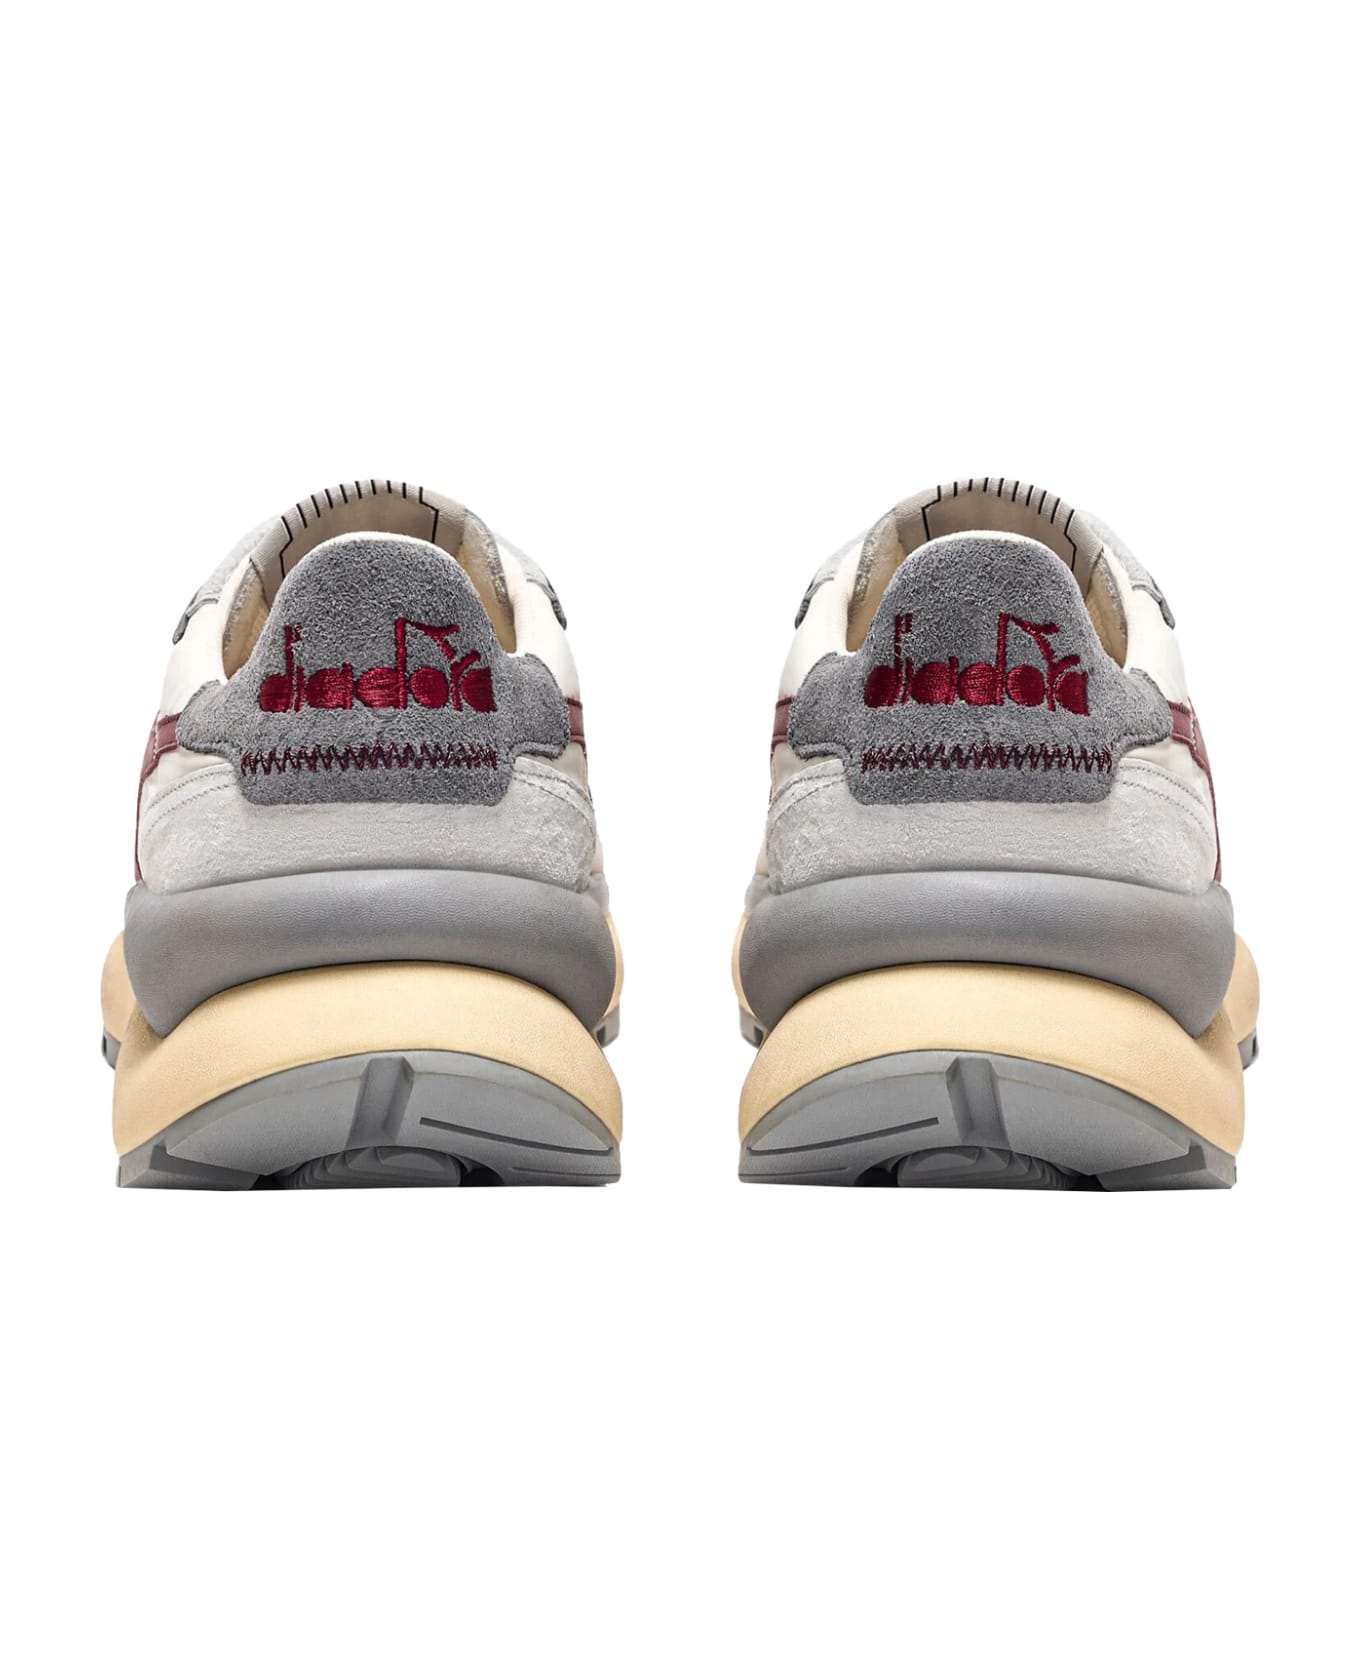 Diadora Sneakers - White/red